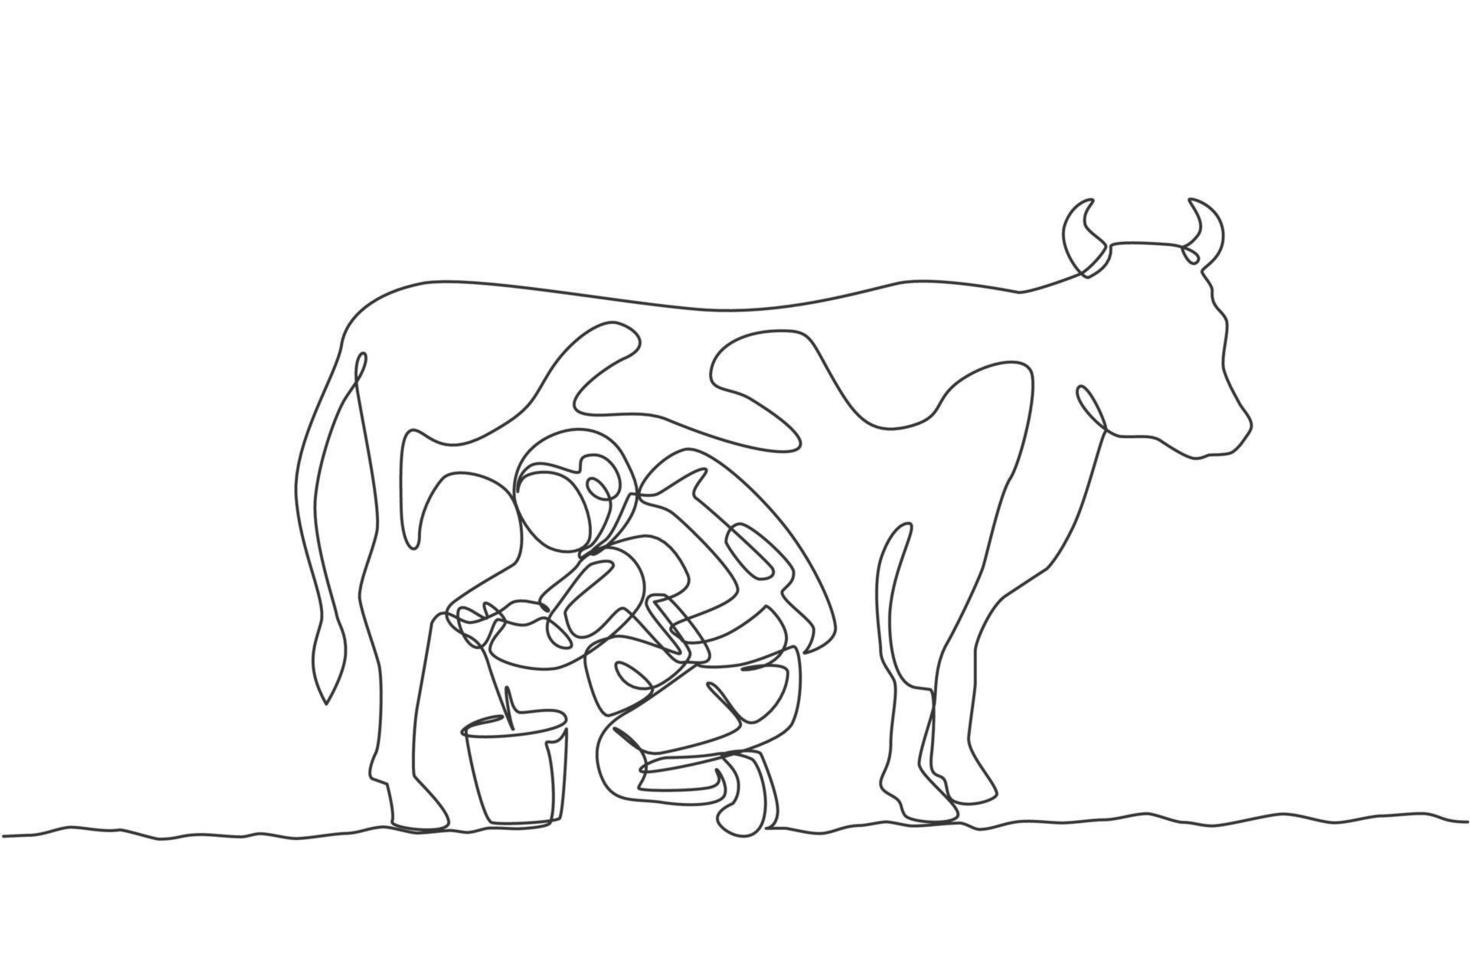 Un dibujo de una sola línea del astronauta se pone en cuclillas ordeñando la vaca y se pone en un cubo de lata de leche en la ilustración de vector gráfico de la superficie de la luna. concepto de agricultura del espacio ultraterrestre. diseño moderno de dibujo de línea continua